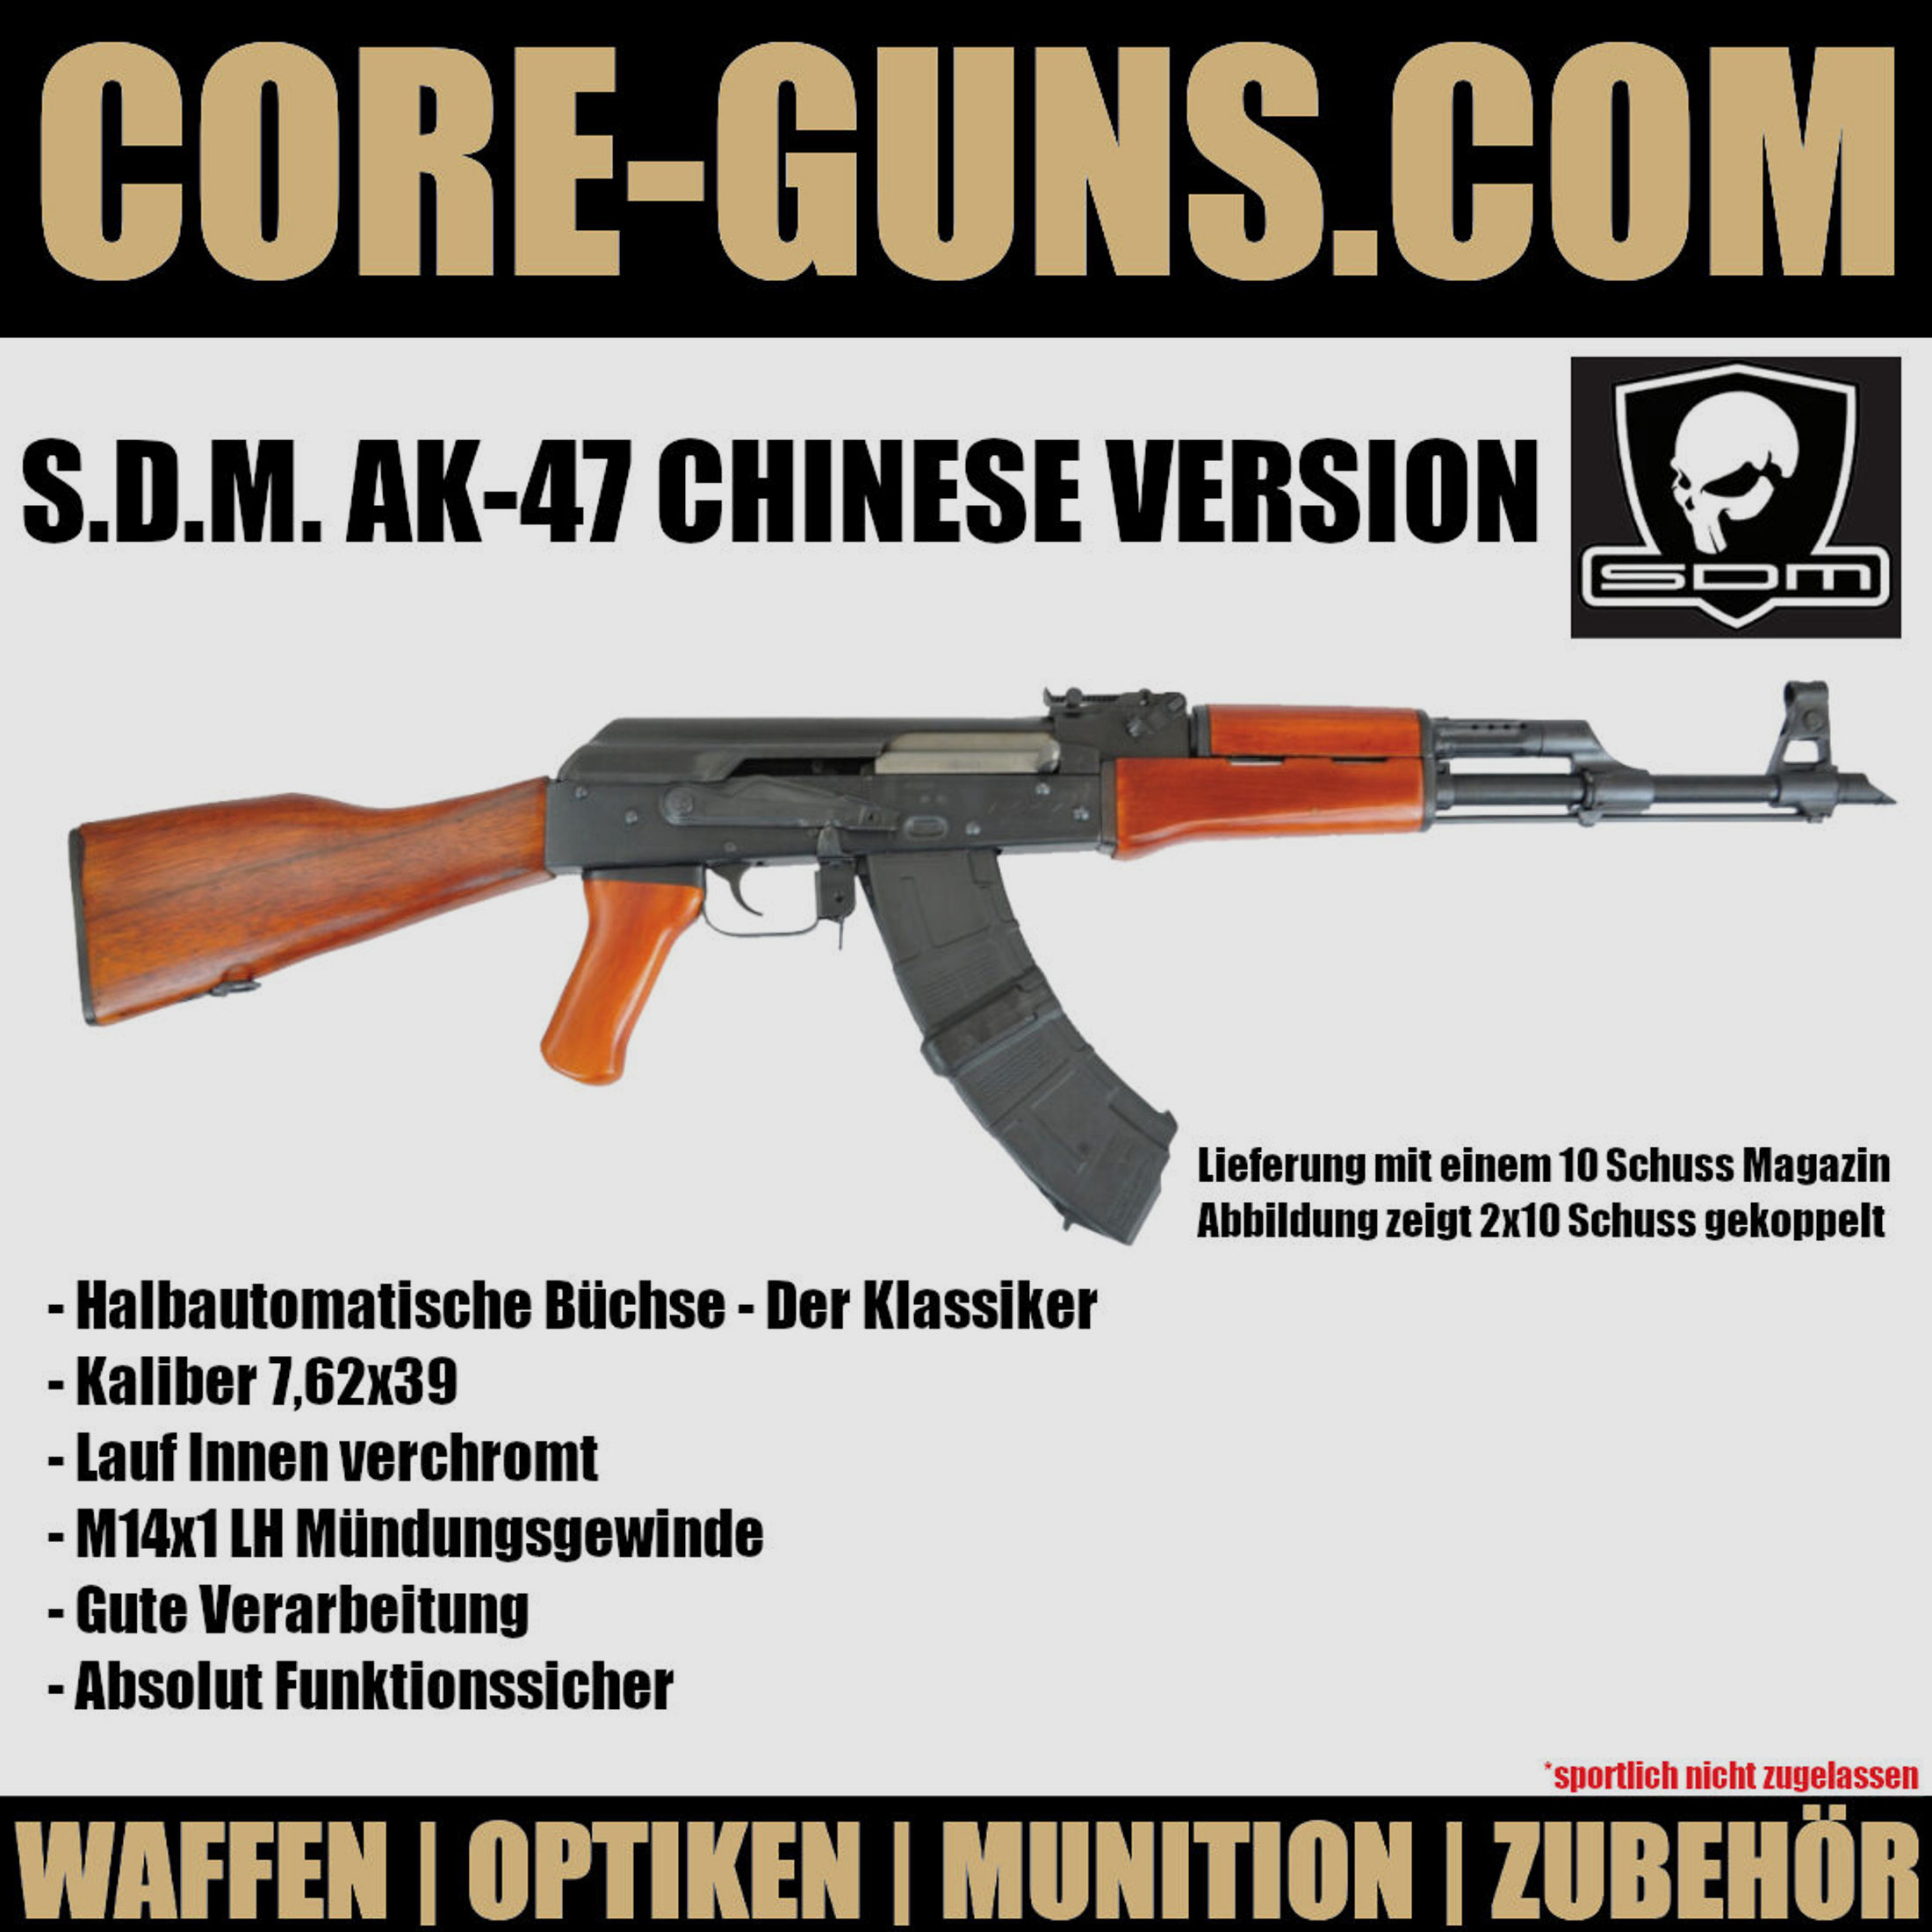 S.D.M. AK-47 Chinese Version SDM AK47 Selbstladebüchse Kaliber 7,62x39	 SDM AK47